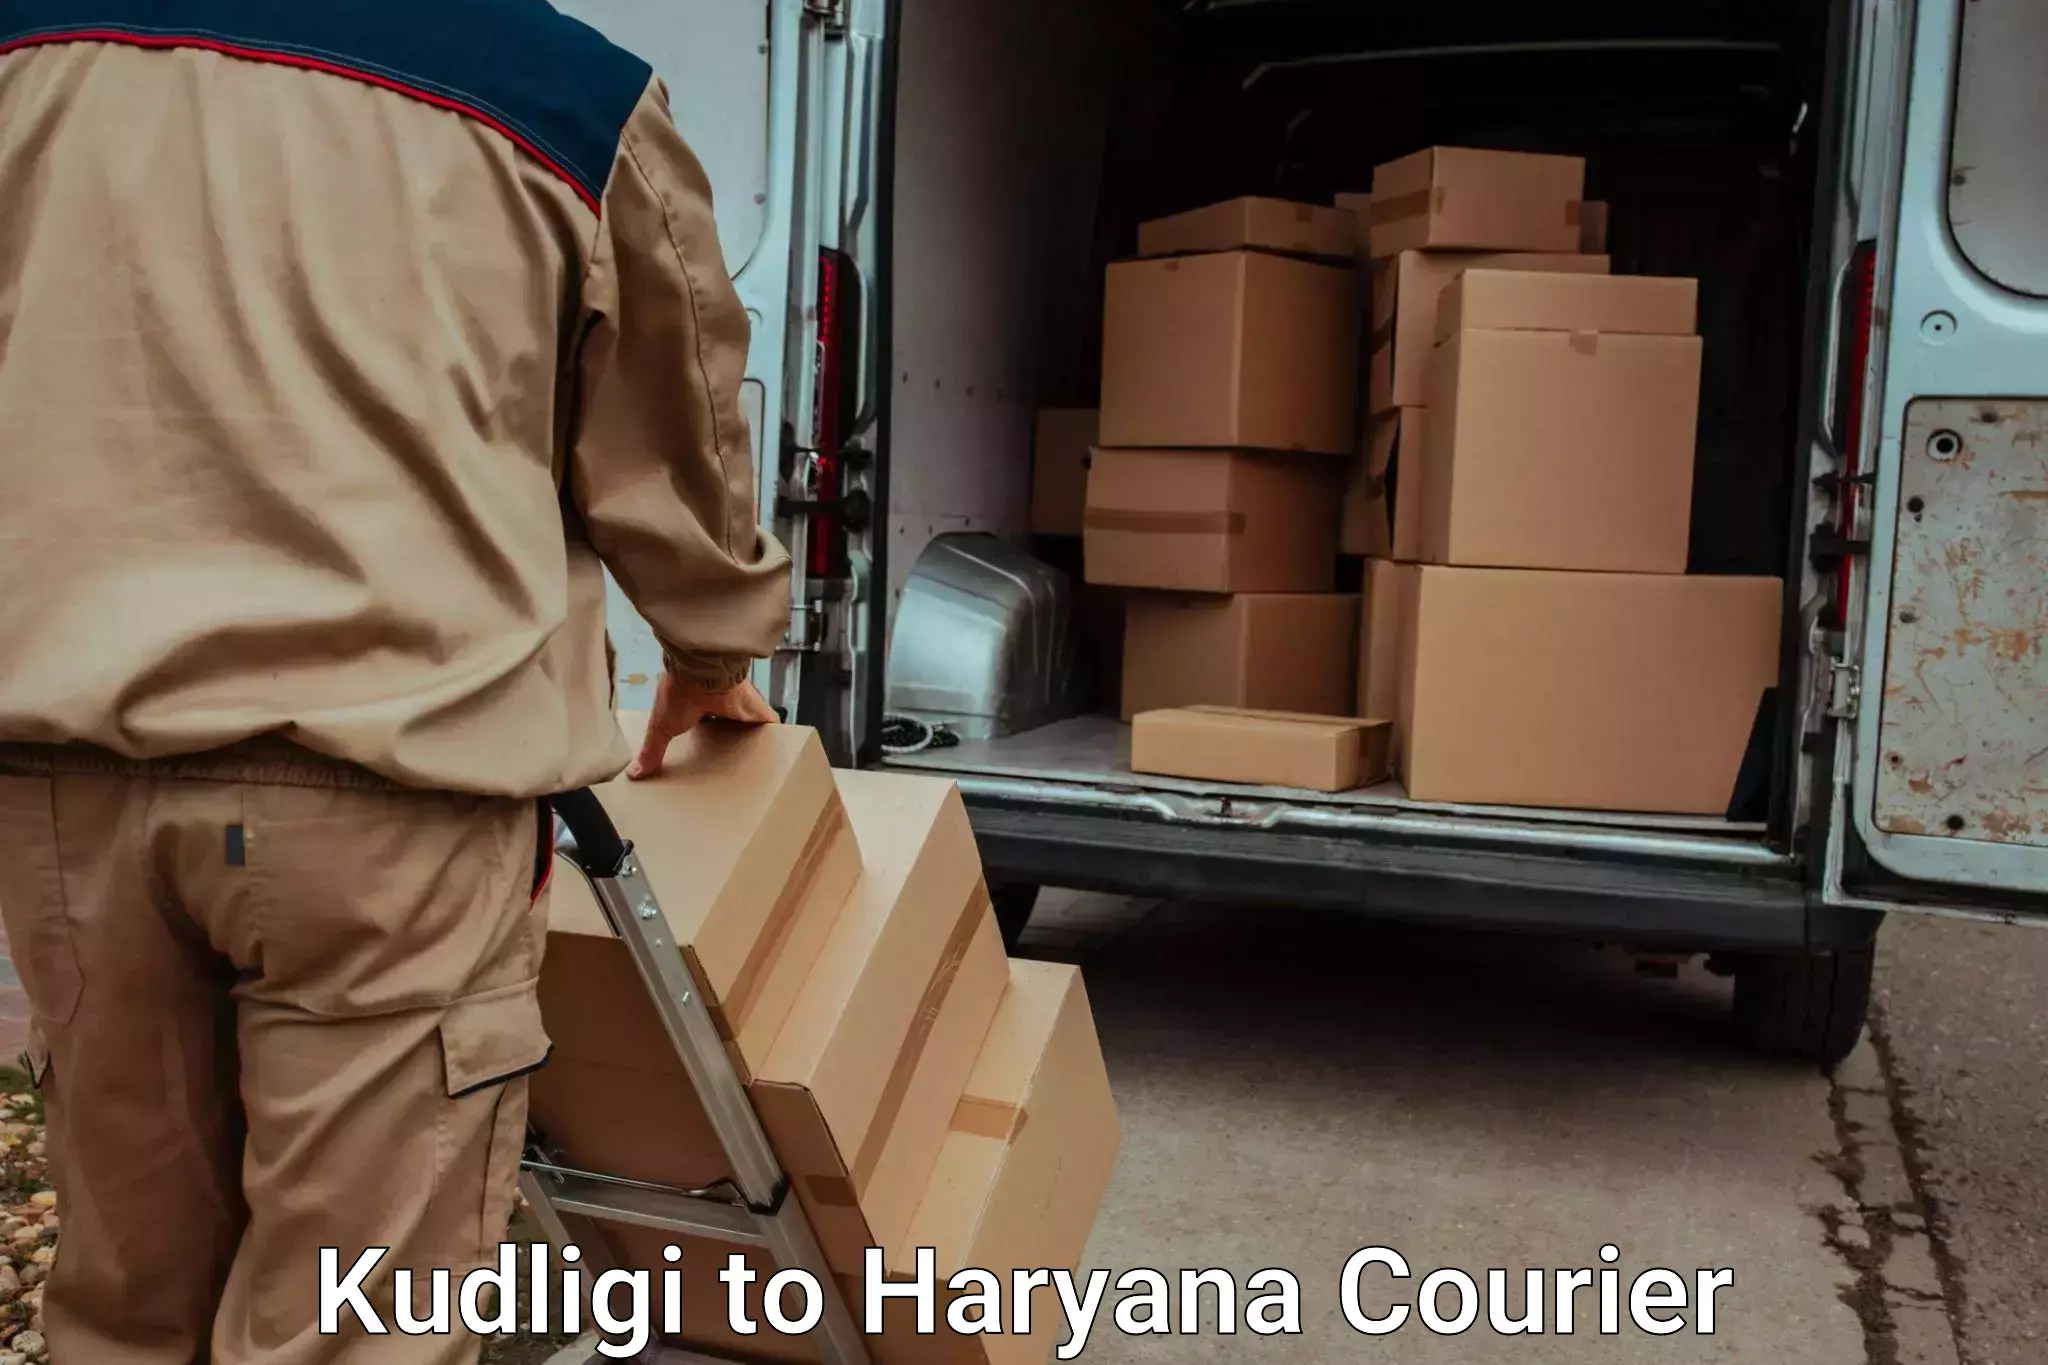 Express luggage delivery Kudligi to Haryana